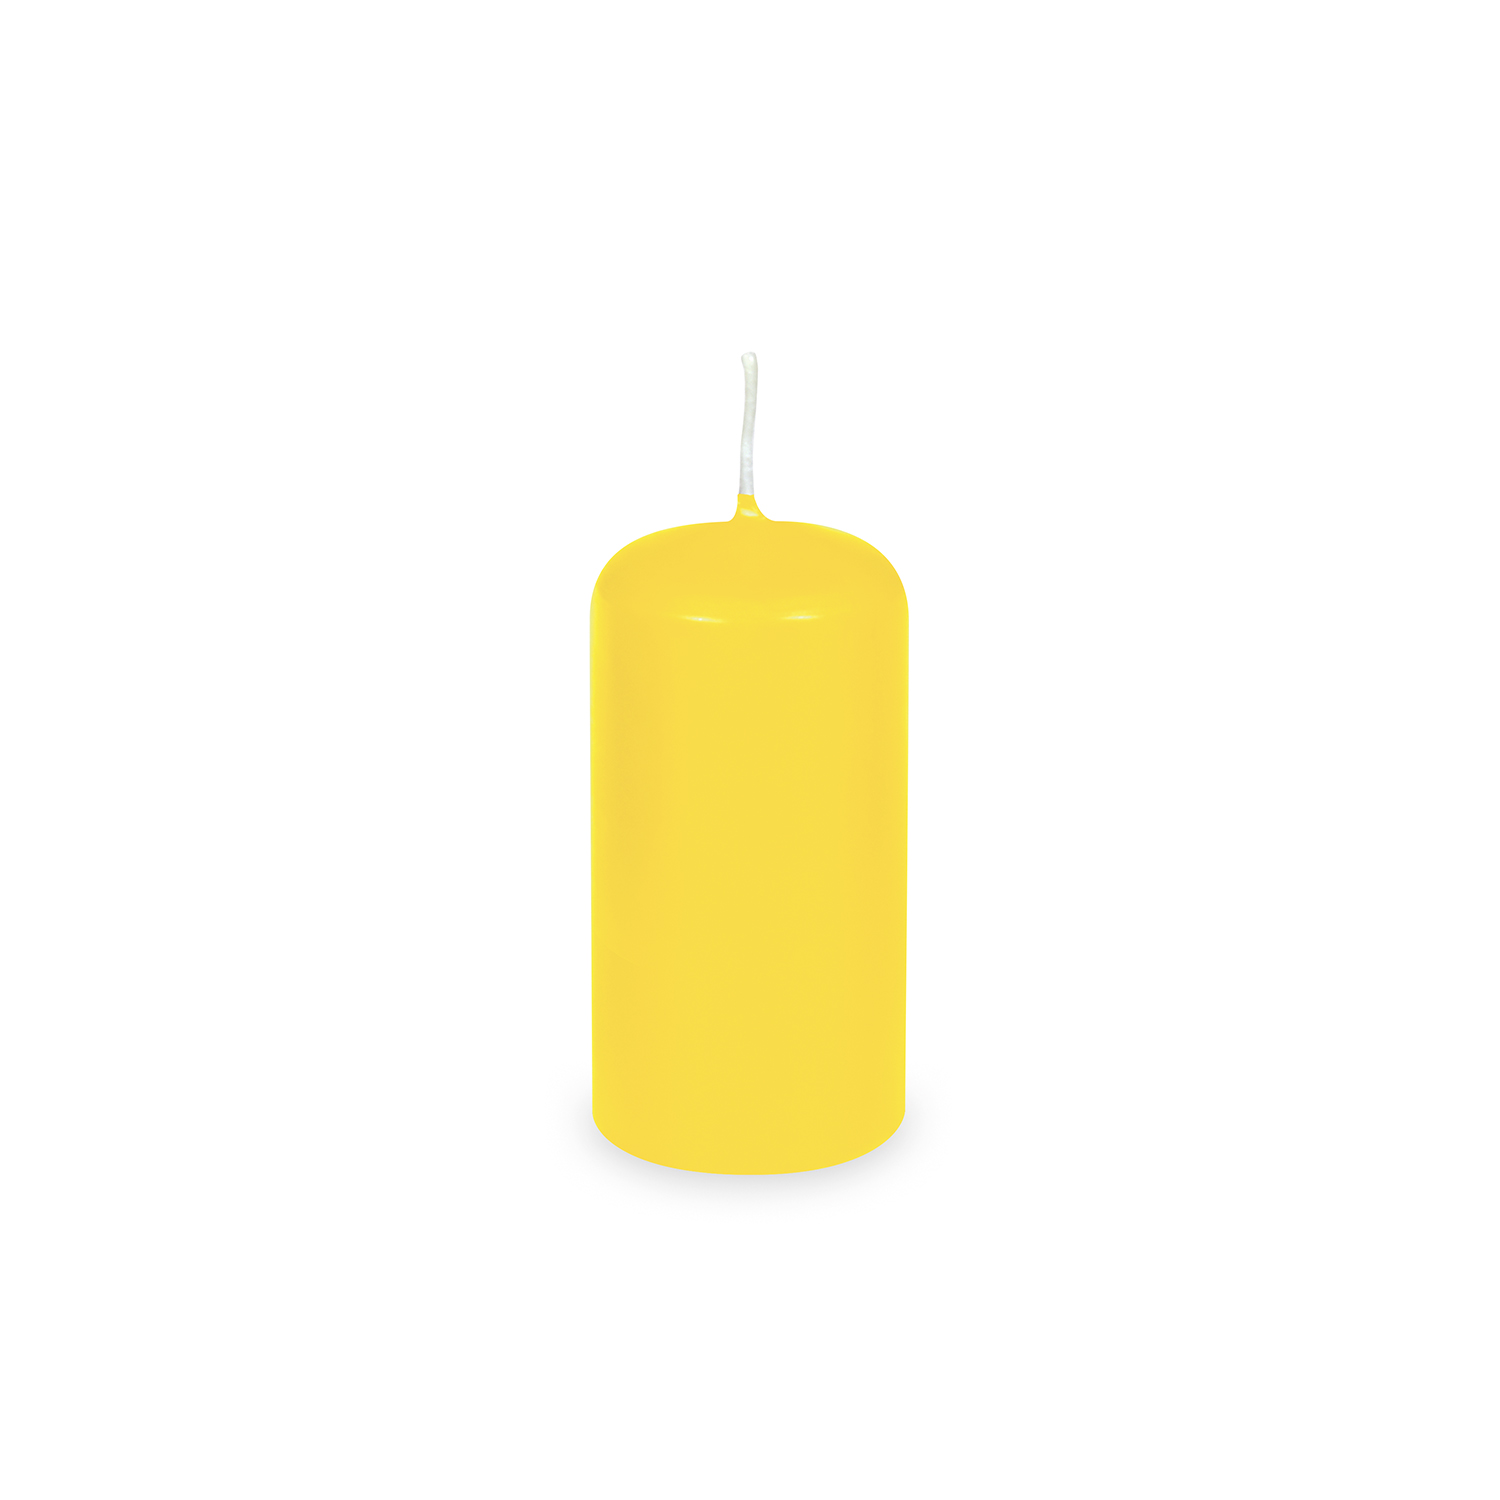 Svíčky 4x8 cm / 4 ks, žluté, válcové